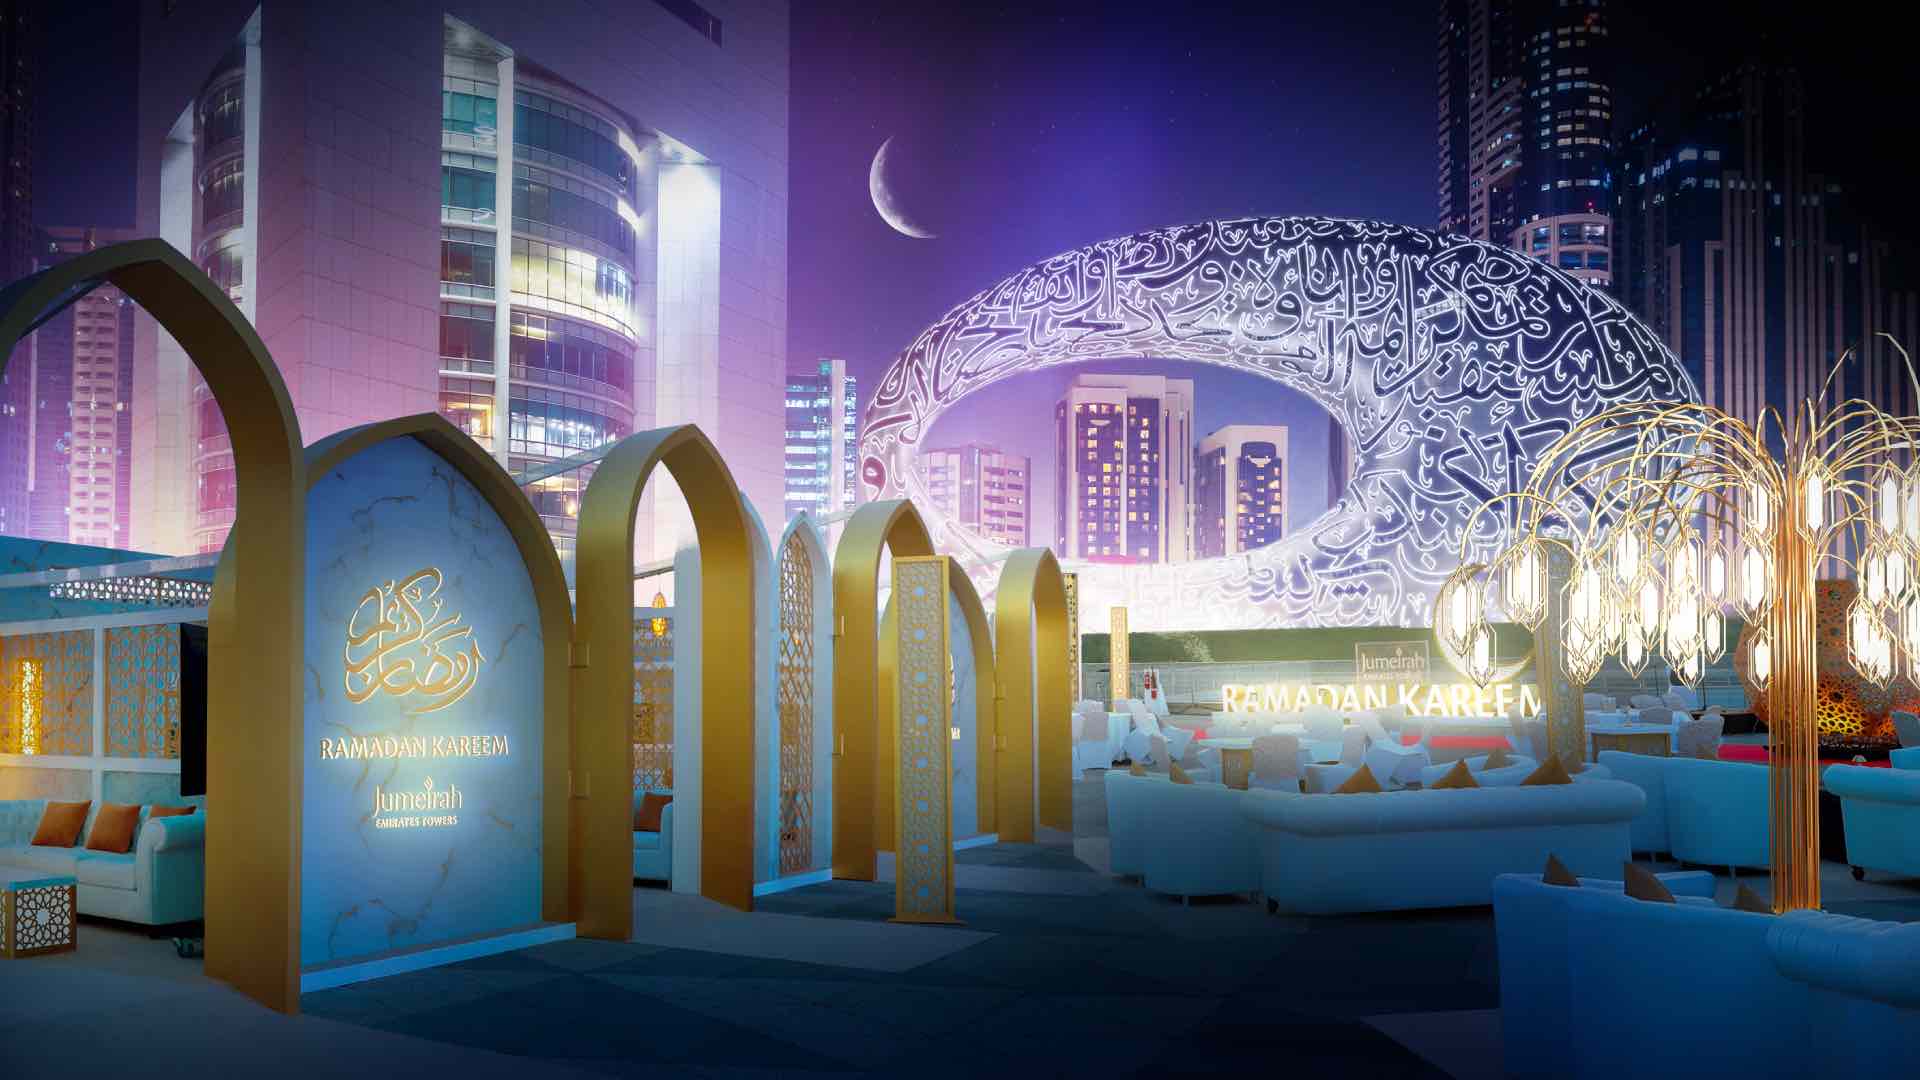 Dubai’s best Iftars